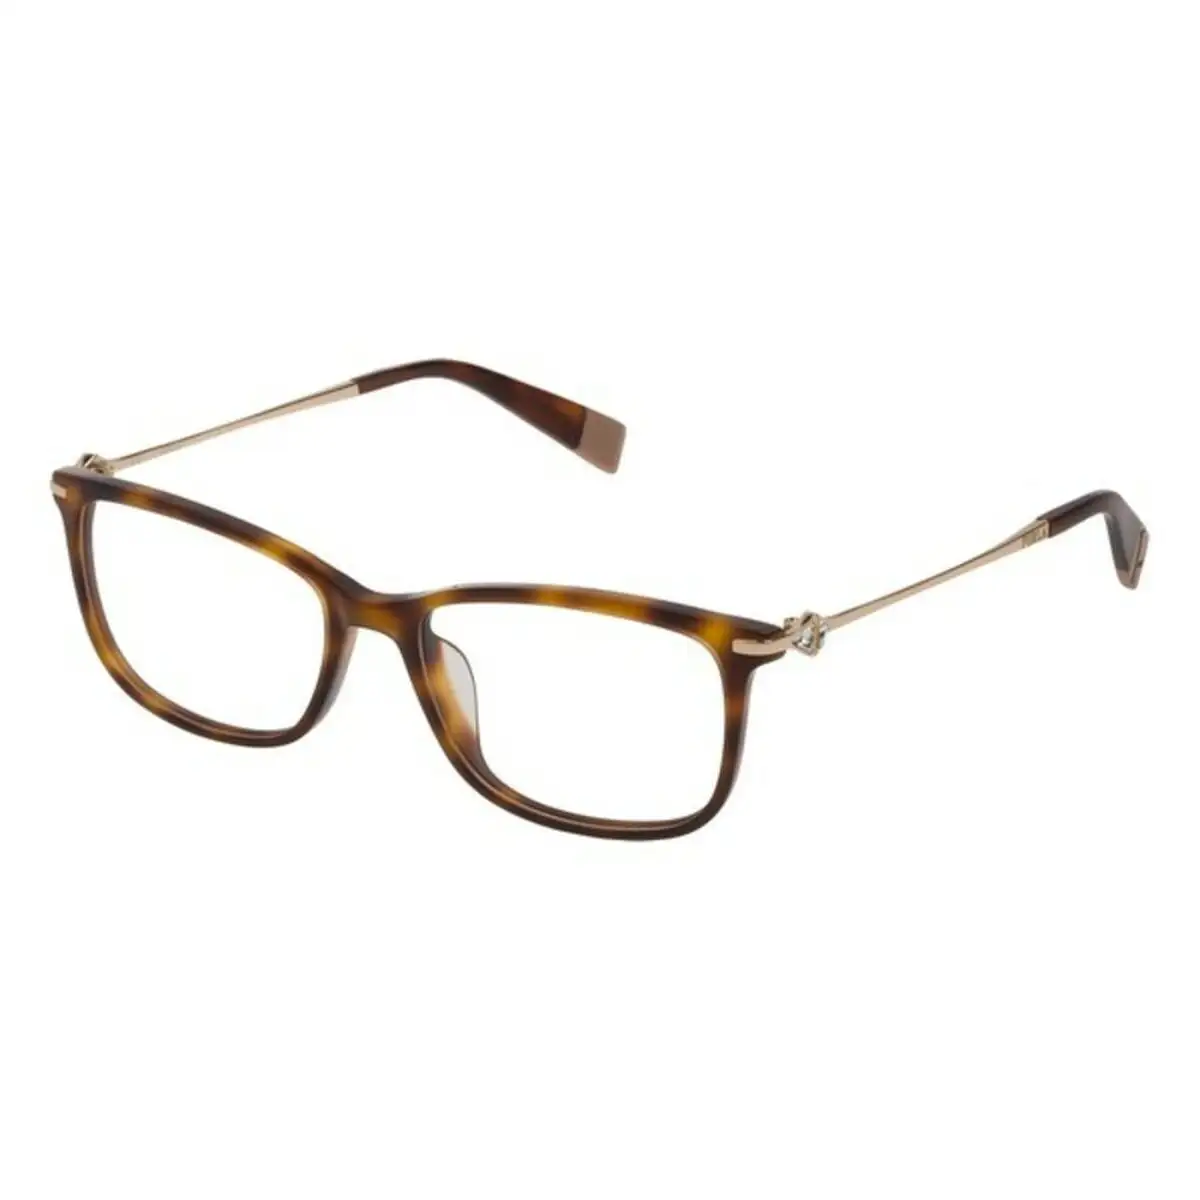 Monture de lunettes femme furla vfu187s540752 dark havana o 54 mm _2441. DIAYTAR SENEGAL - Votre Passage vers le Chic et l'Élégance. Naviguez à travers notre boutique en ligne pour trouver des produits qui ajoutent une touche sophistiquée à votre style.